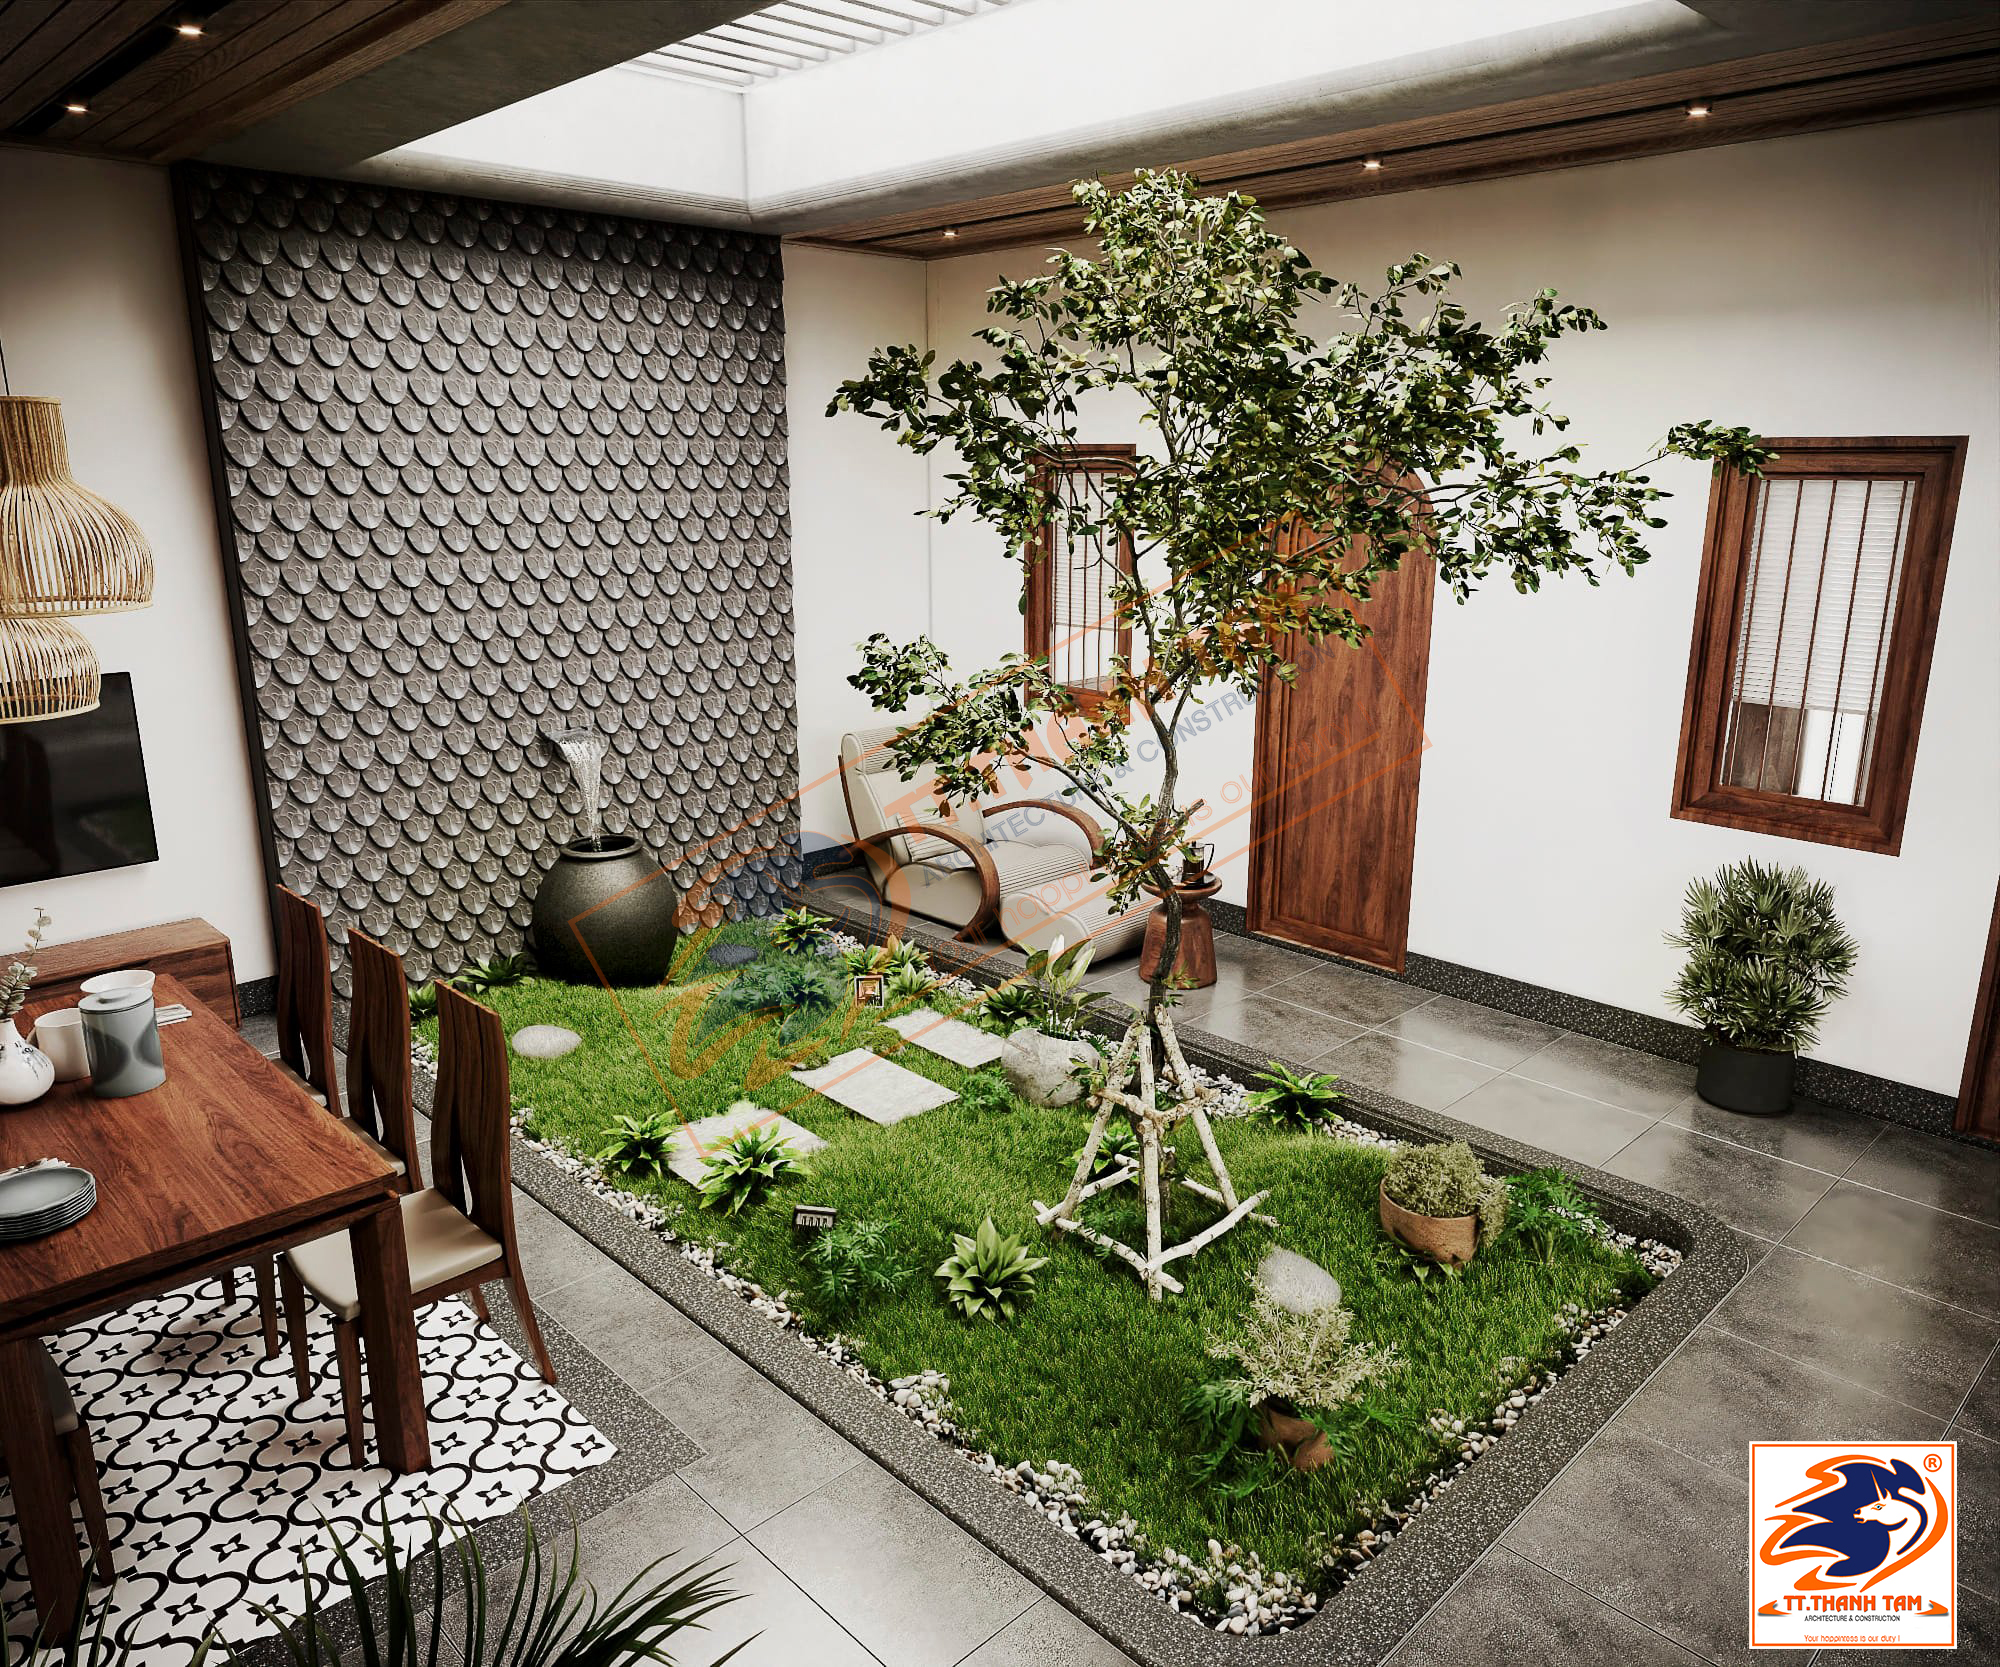 Thiết kế Biệt thự vườn cấp 4 1 tầng hiện đại rộng 300m2 tại Vĩnh Long - Việt Nam